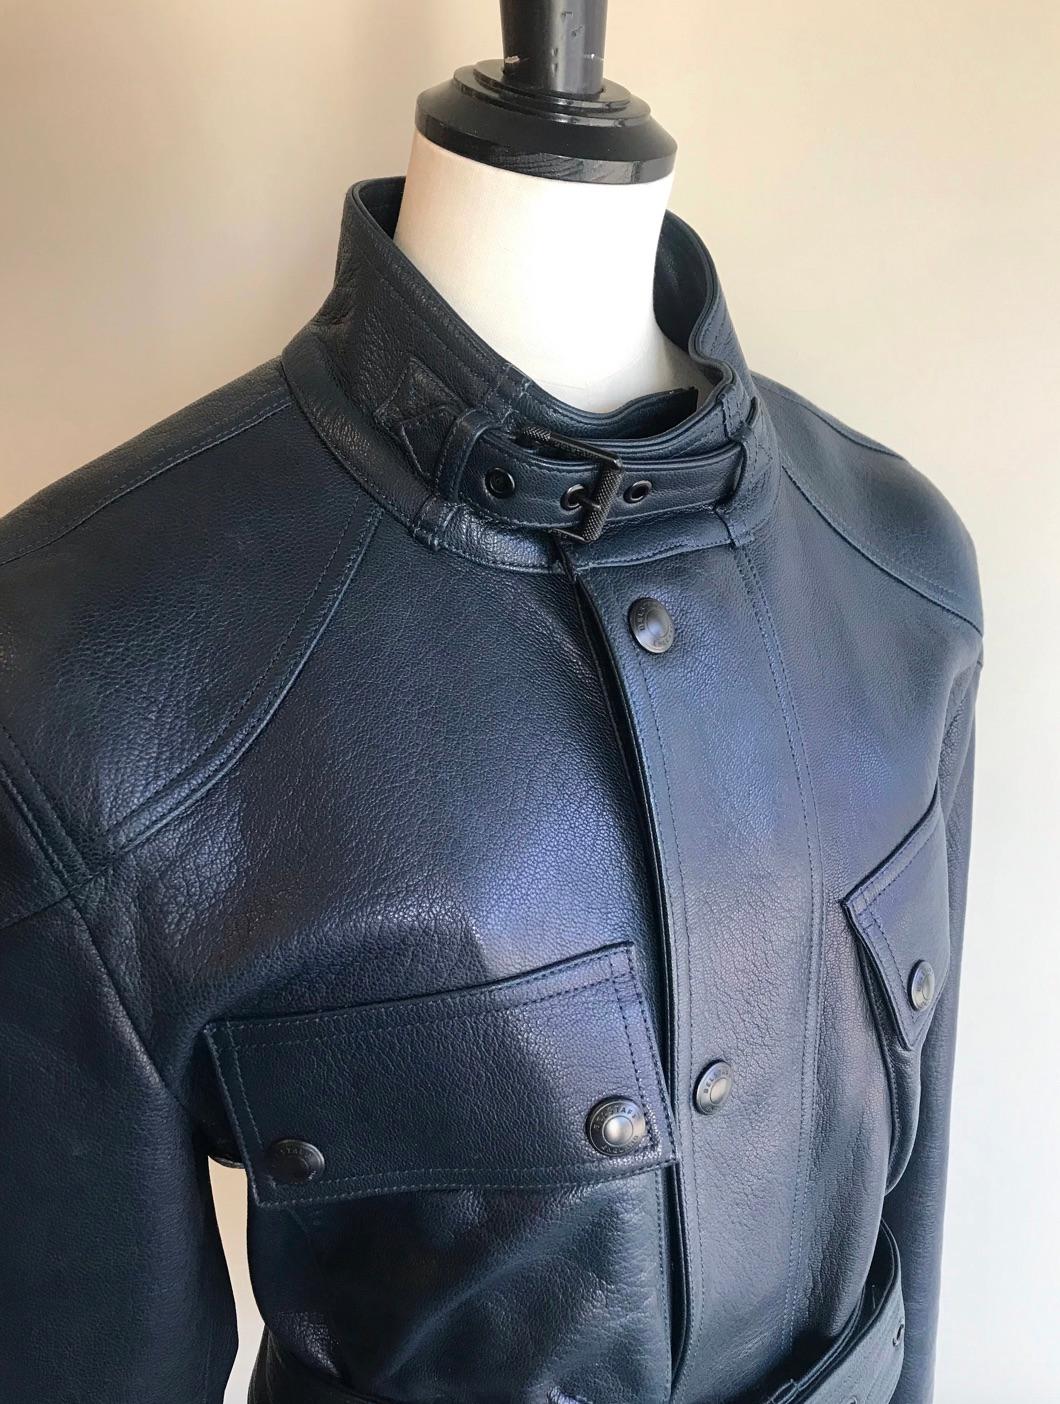 Belstaff Trialmaster Leather Jacket For Sale 2